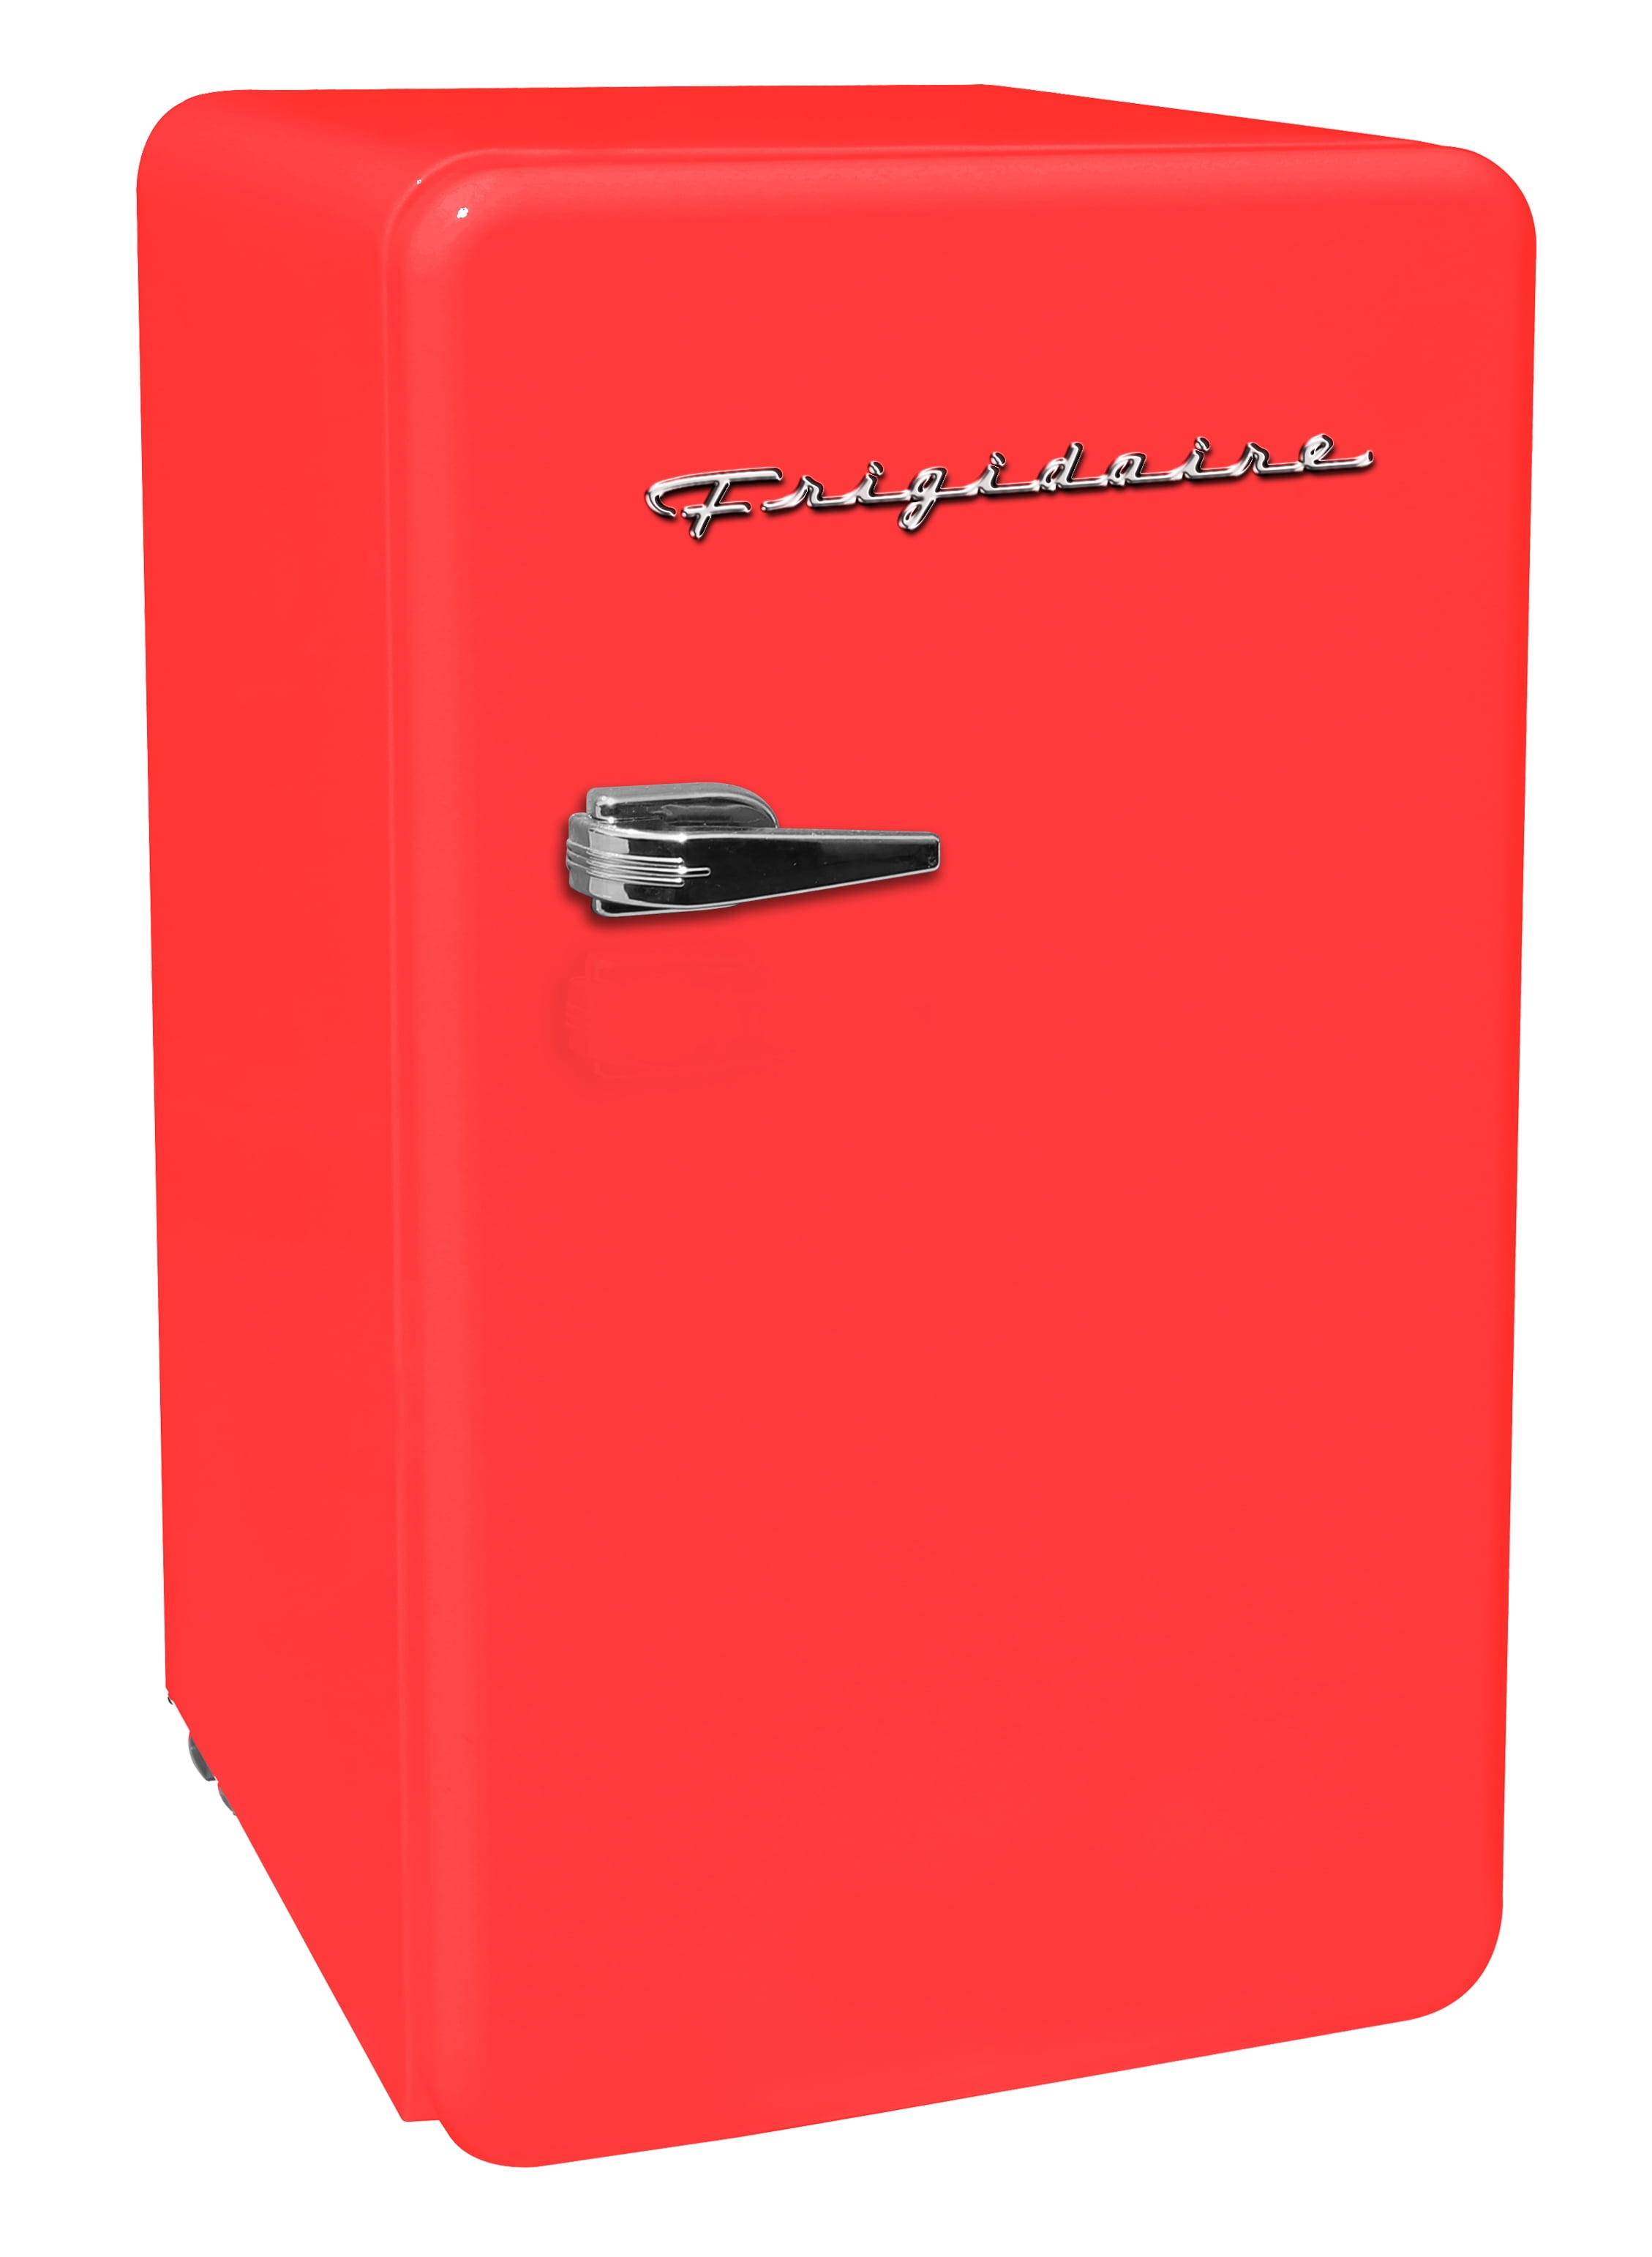 https://i5.walmartimages.com/seo/Frigidaire-3-2-Cu-ft-Single-Door-Retro-Compact-Refrigerator-EFR372-Red_19db99d1-0f4f-4a79-9be1-dcb2d981a6db_1.5133d88d2ea3fcd390d0d286e465e0b8.jpeg